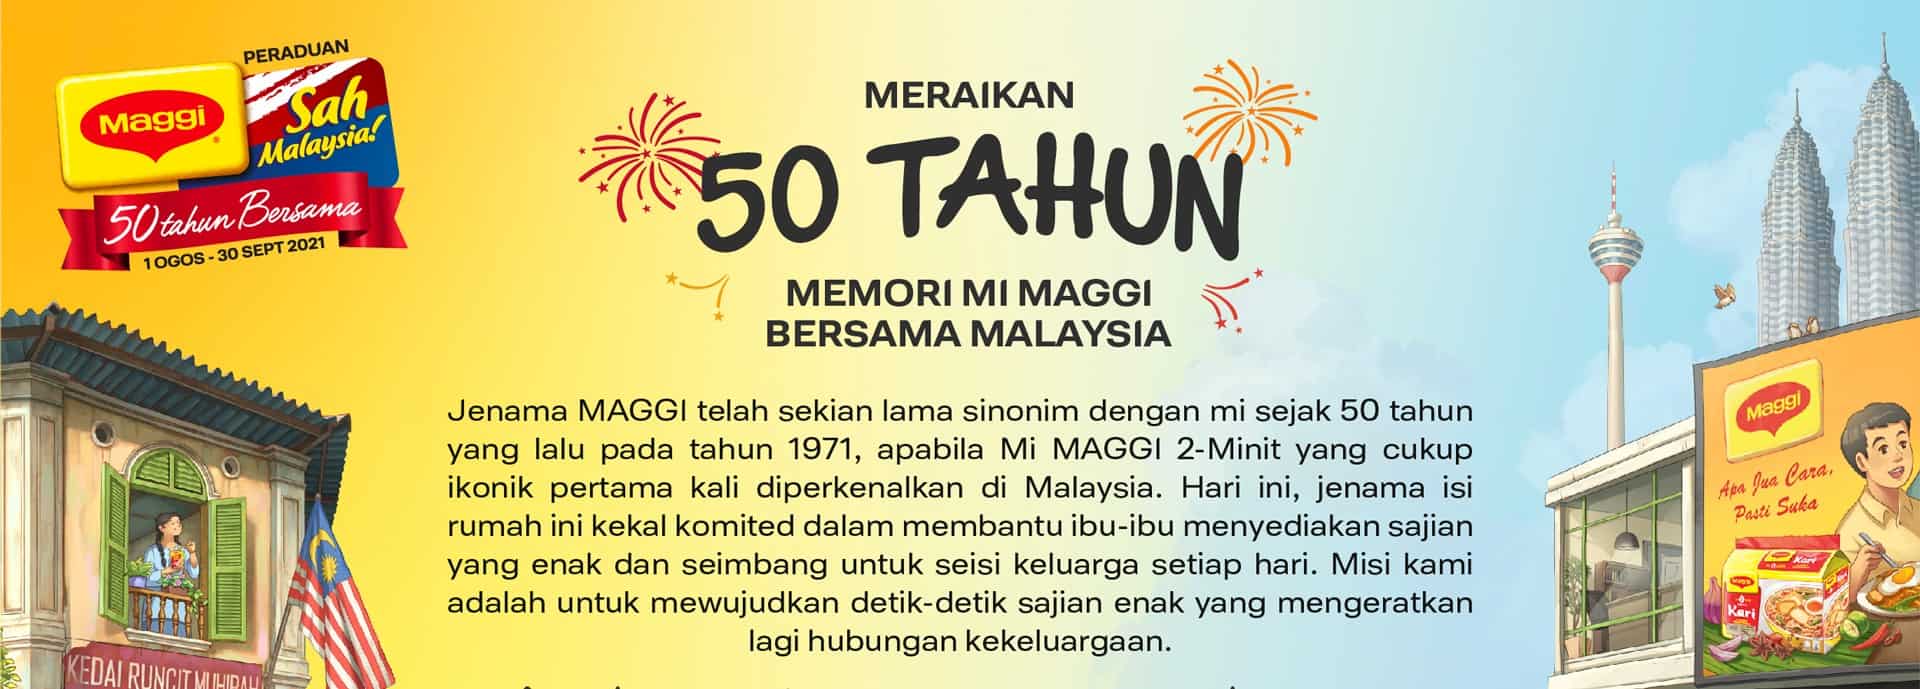 Kempen MAGGI Sah Malaysia kembali untuk raikan kegemilangan 50 tahun memori MAGGI bersama Malaysia